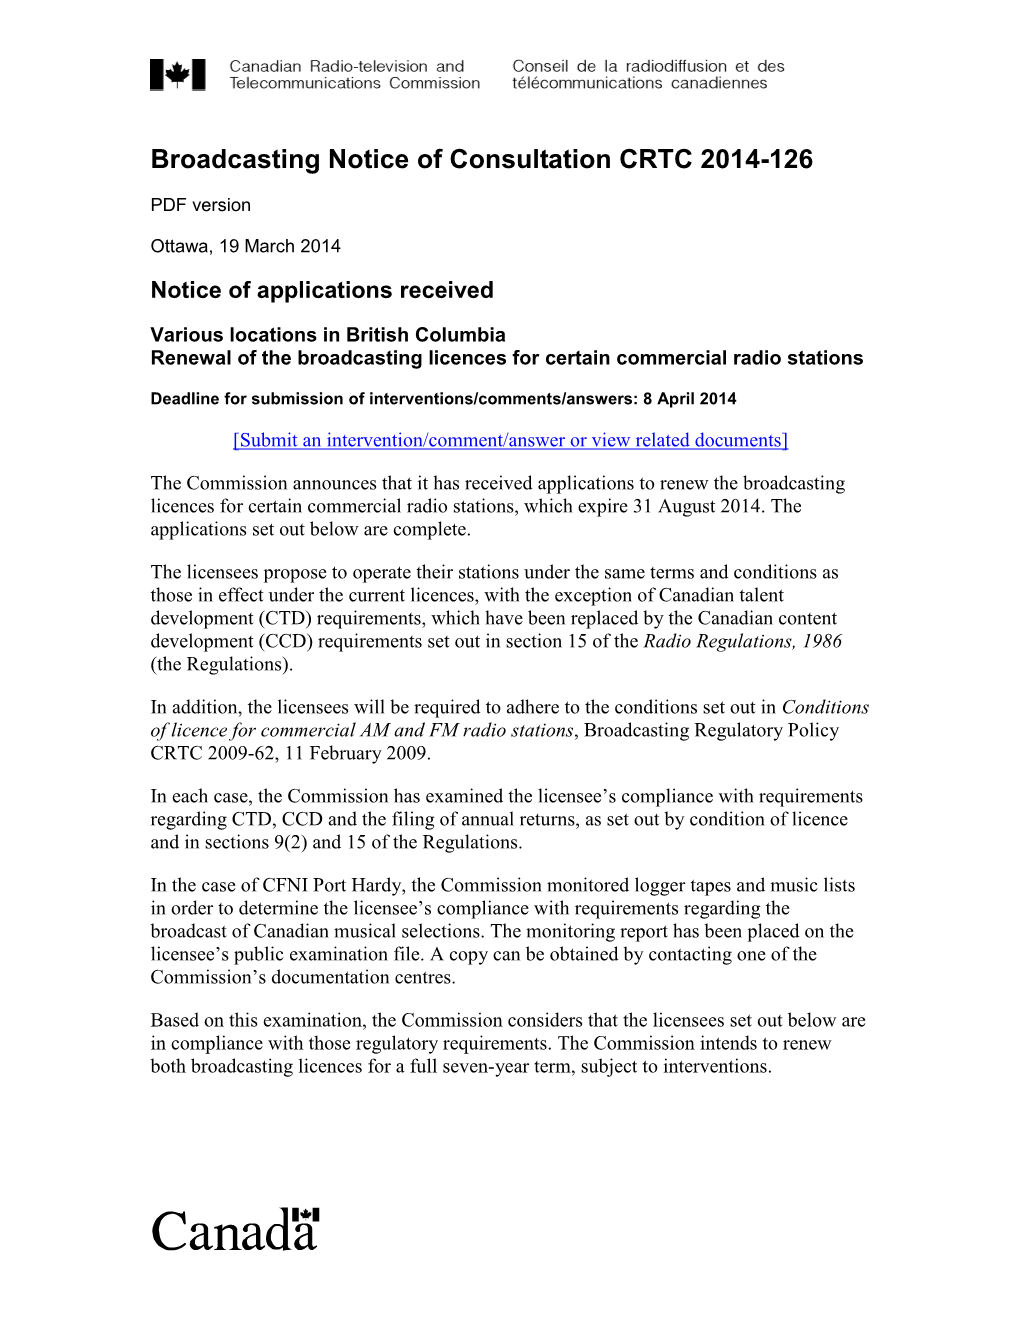 Broadcasting Notice of Consultation CRTC 2014-126